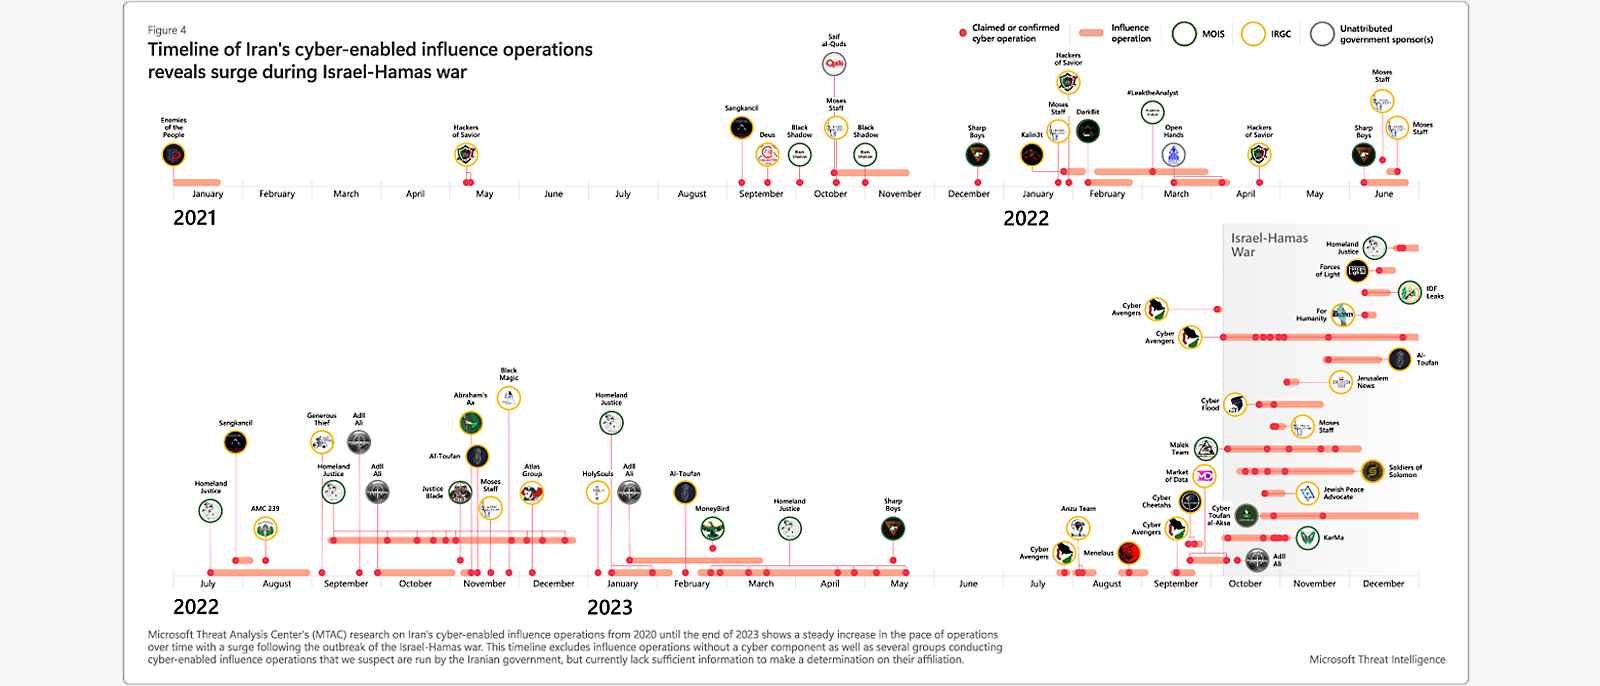 Cronologia das operações de ciberinfluência do Irão: Aumento durante a guerra do Hamas, 2021-2023